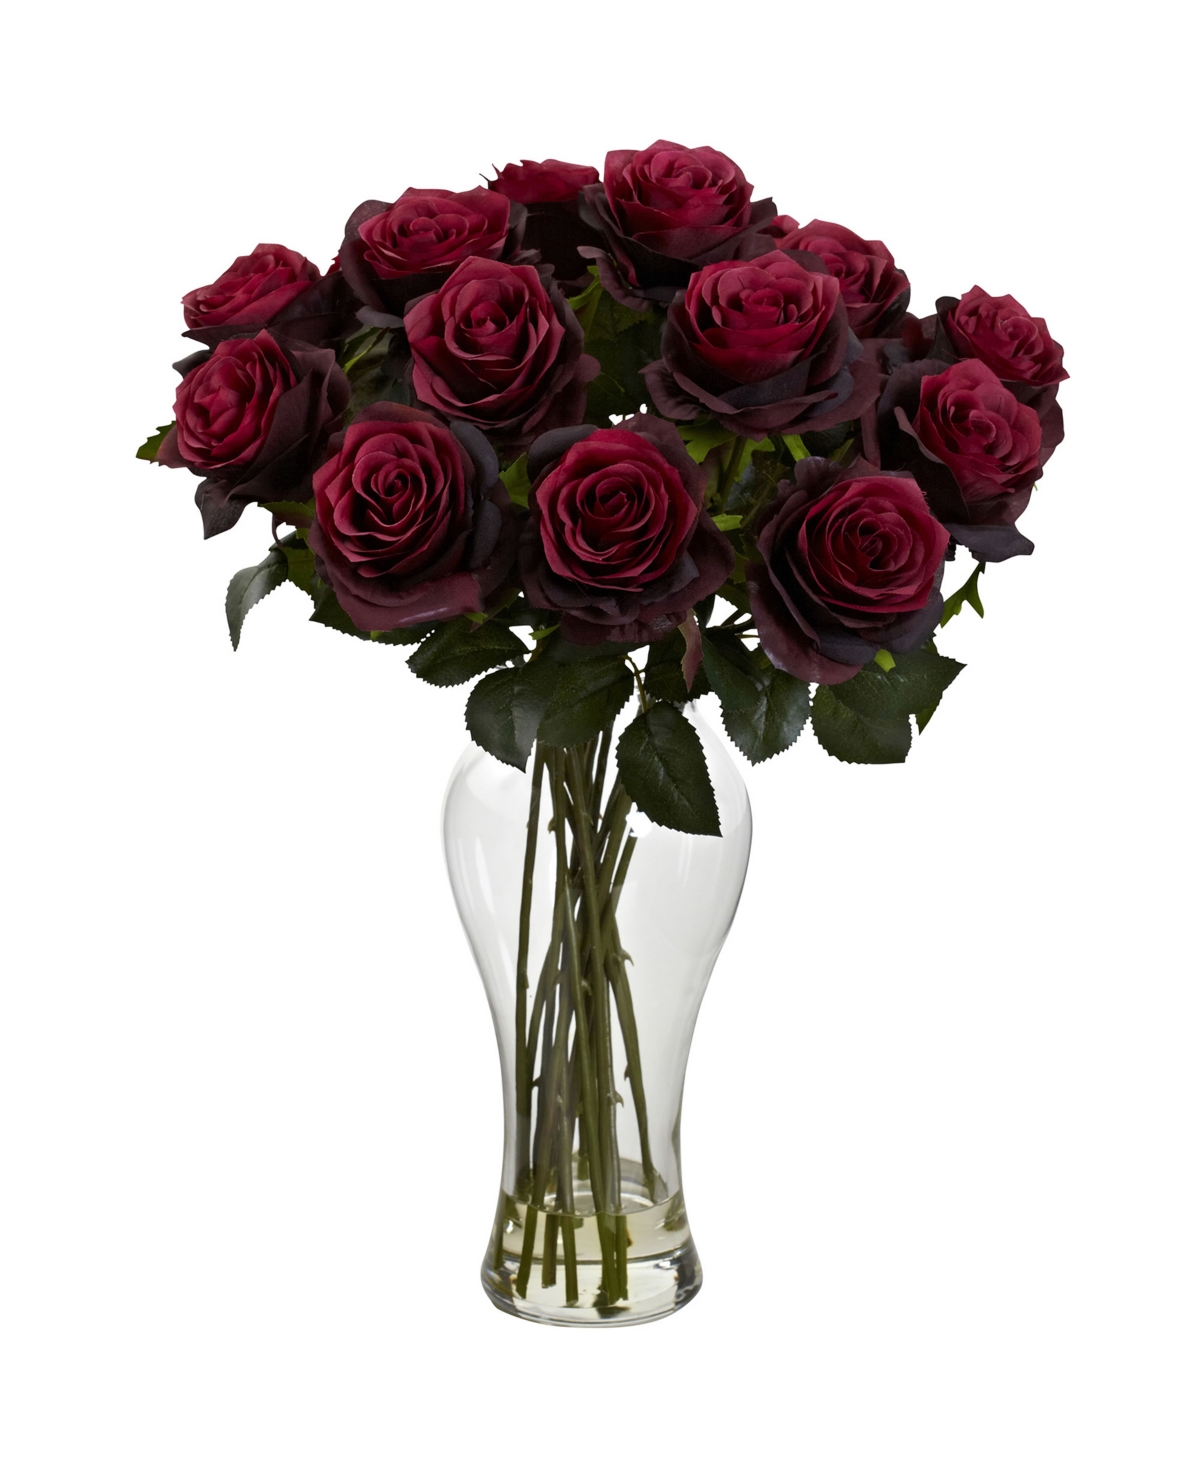 Blooming Roses w/Vase - Burgundy